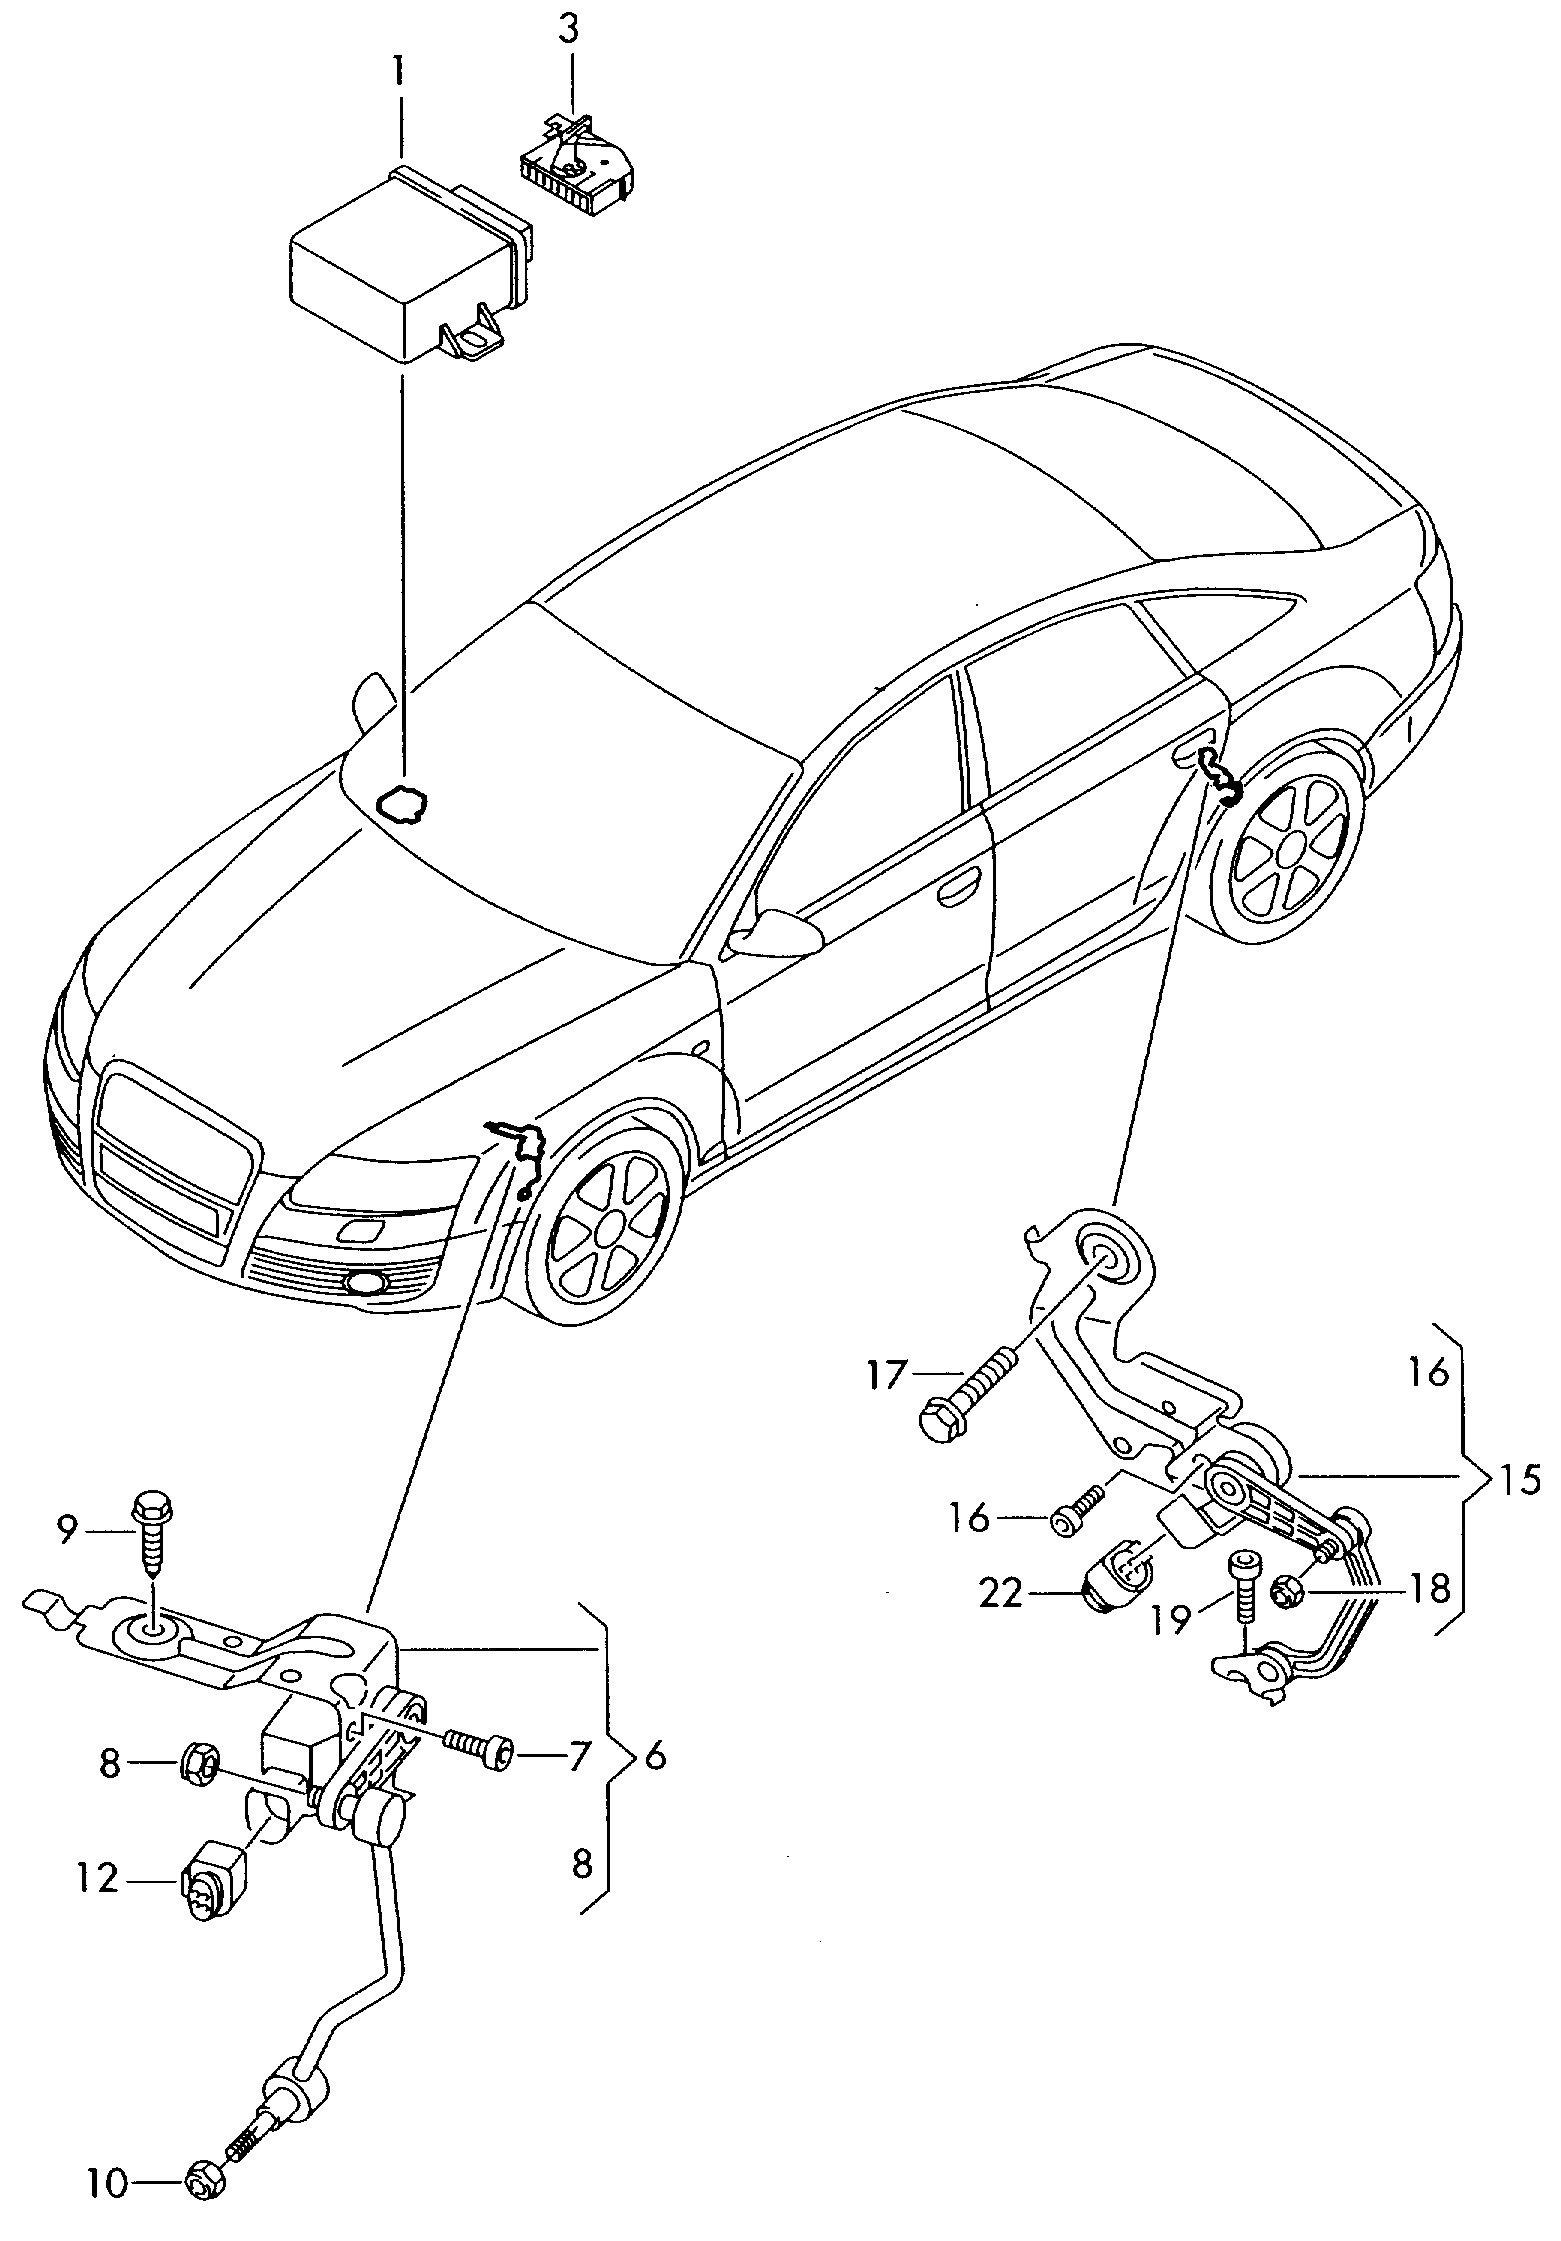 sensor for headlight range
control - Audi A6/S6/Avant quattro(A6Q)  